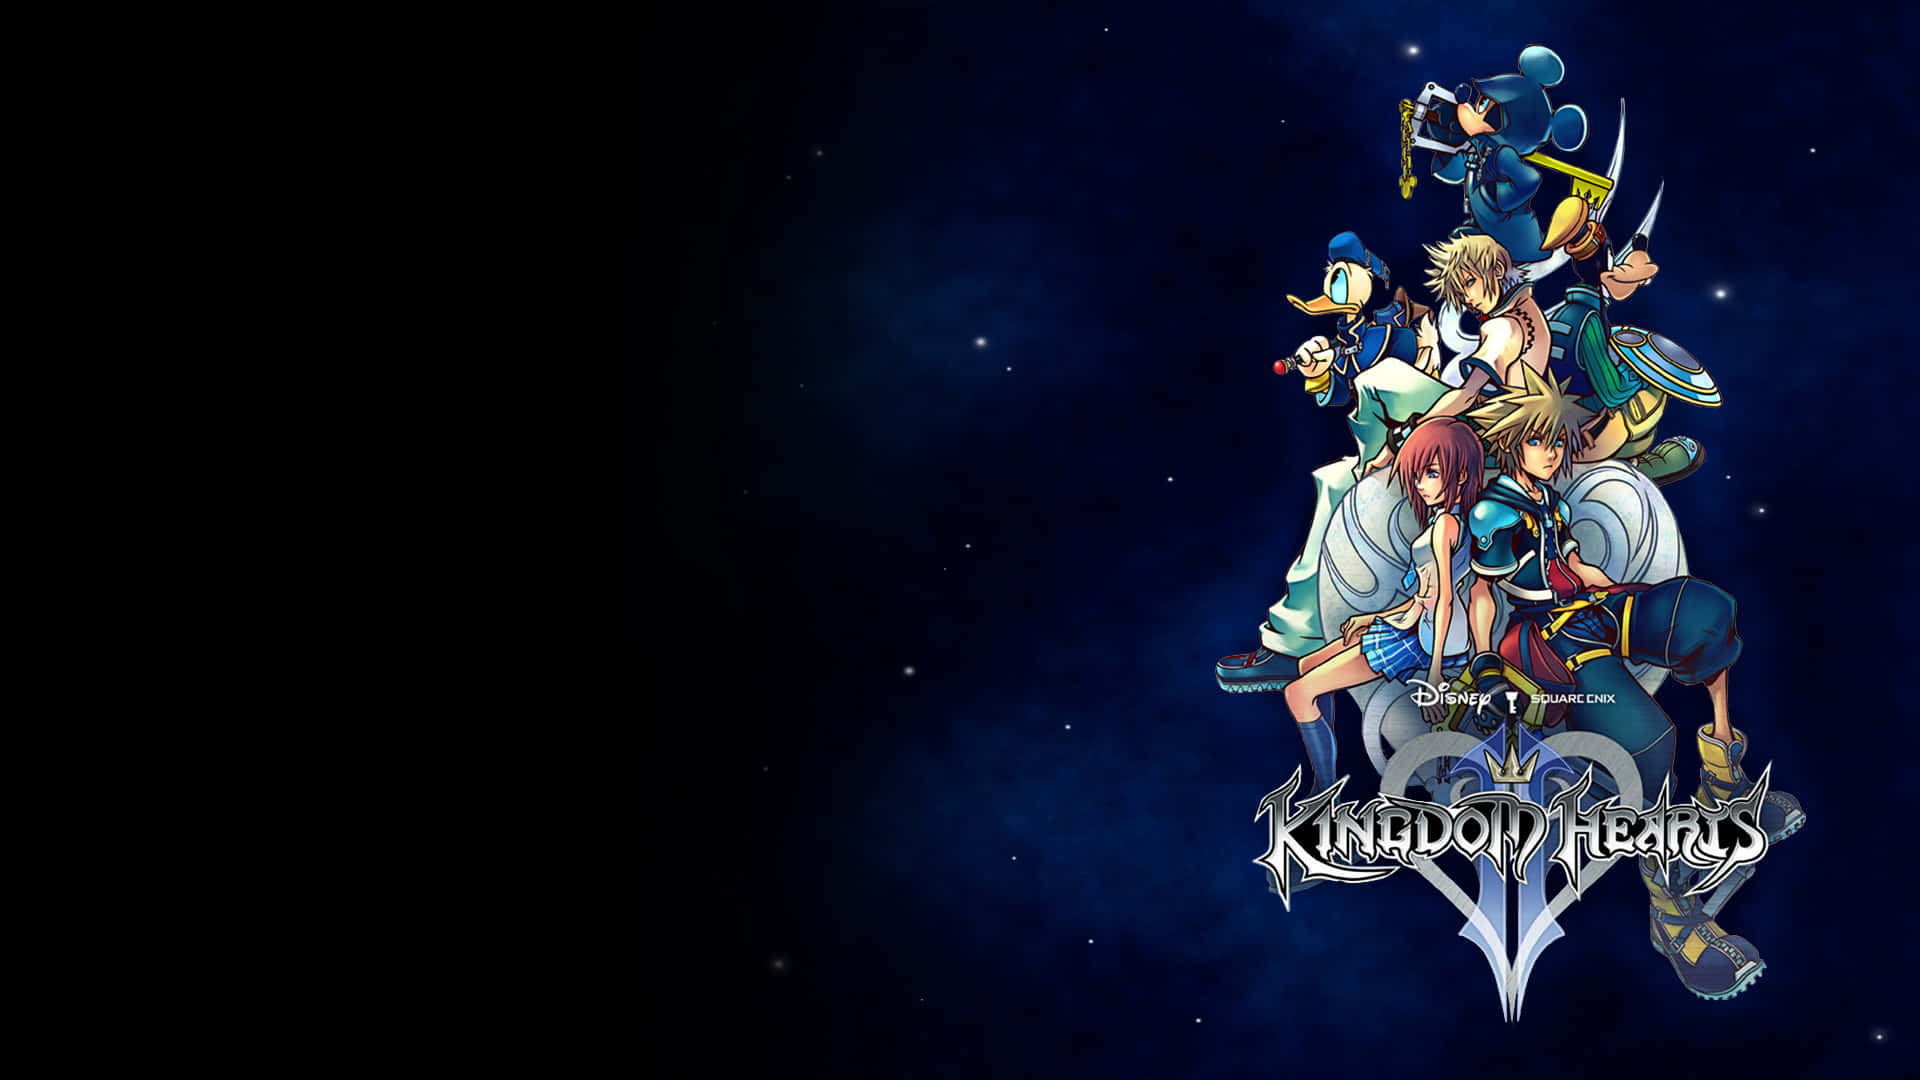 Lås et fantastisk verden op med den elskede Kingdom Hearts serie.